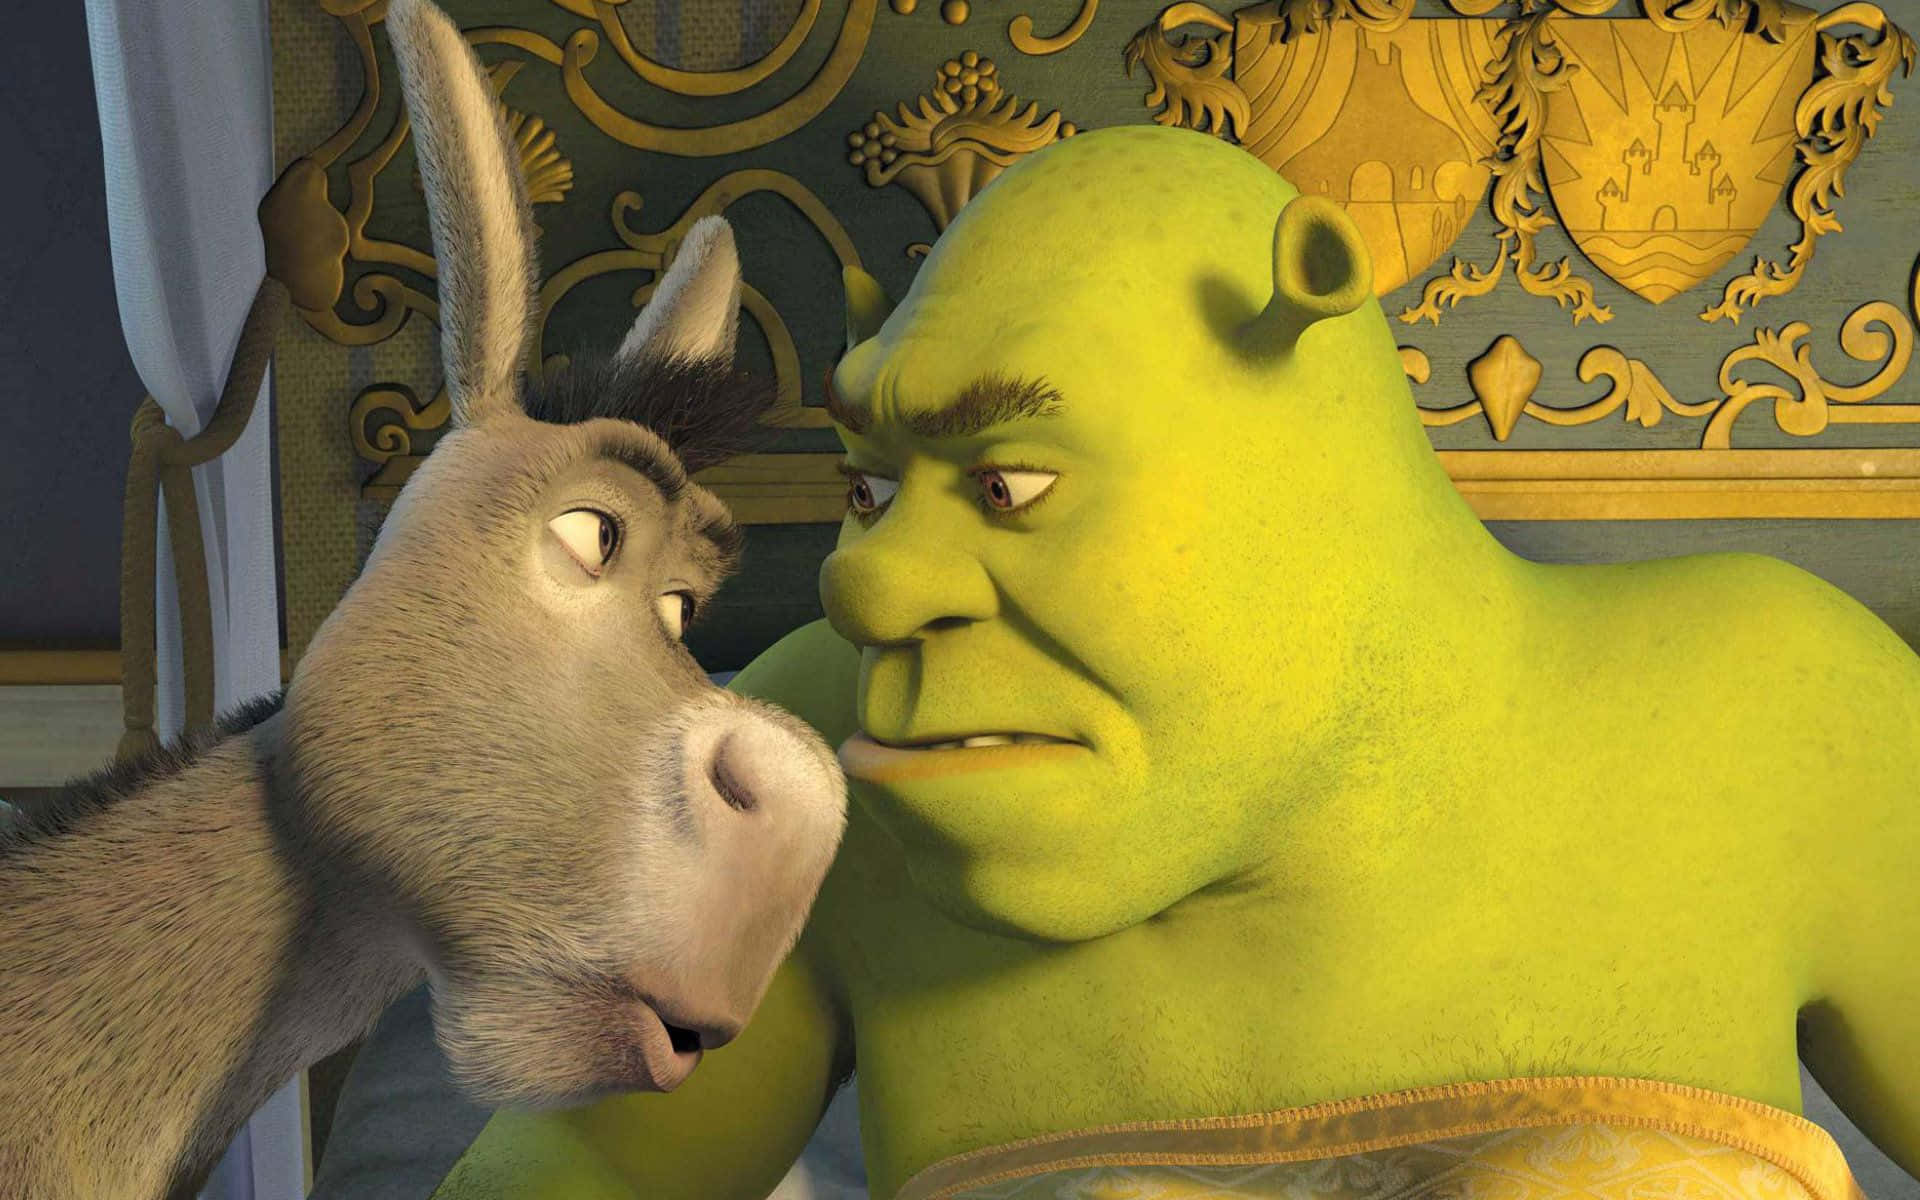 Shrekparecendo Engraçado Em Seu Pântano. Papel de Parede